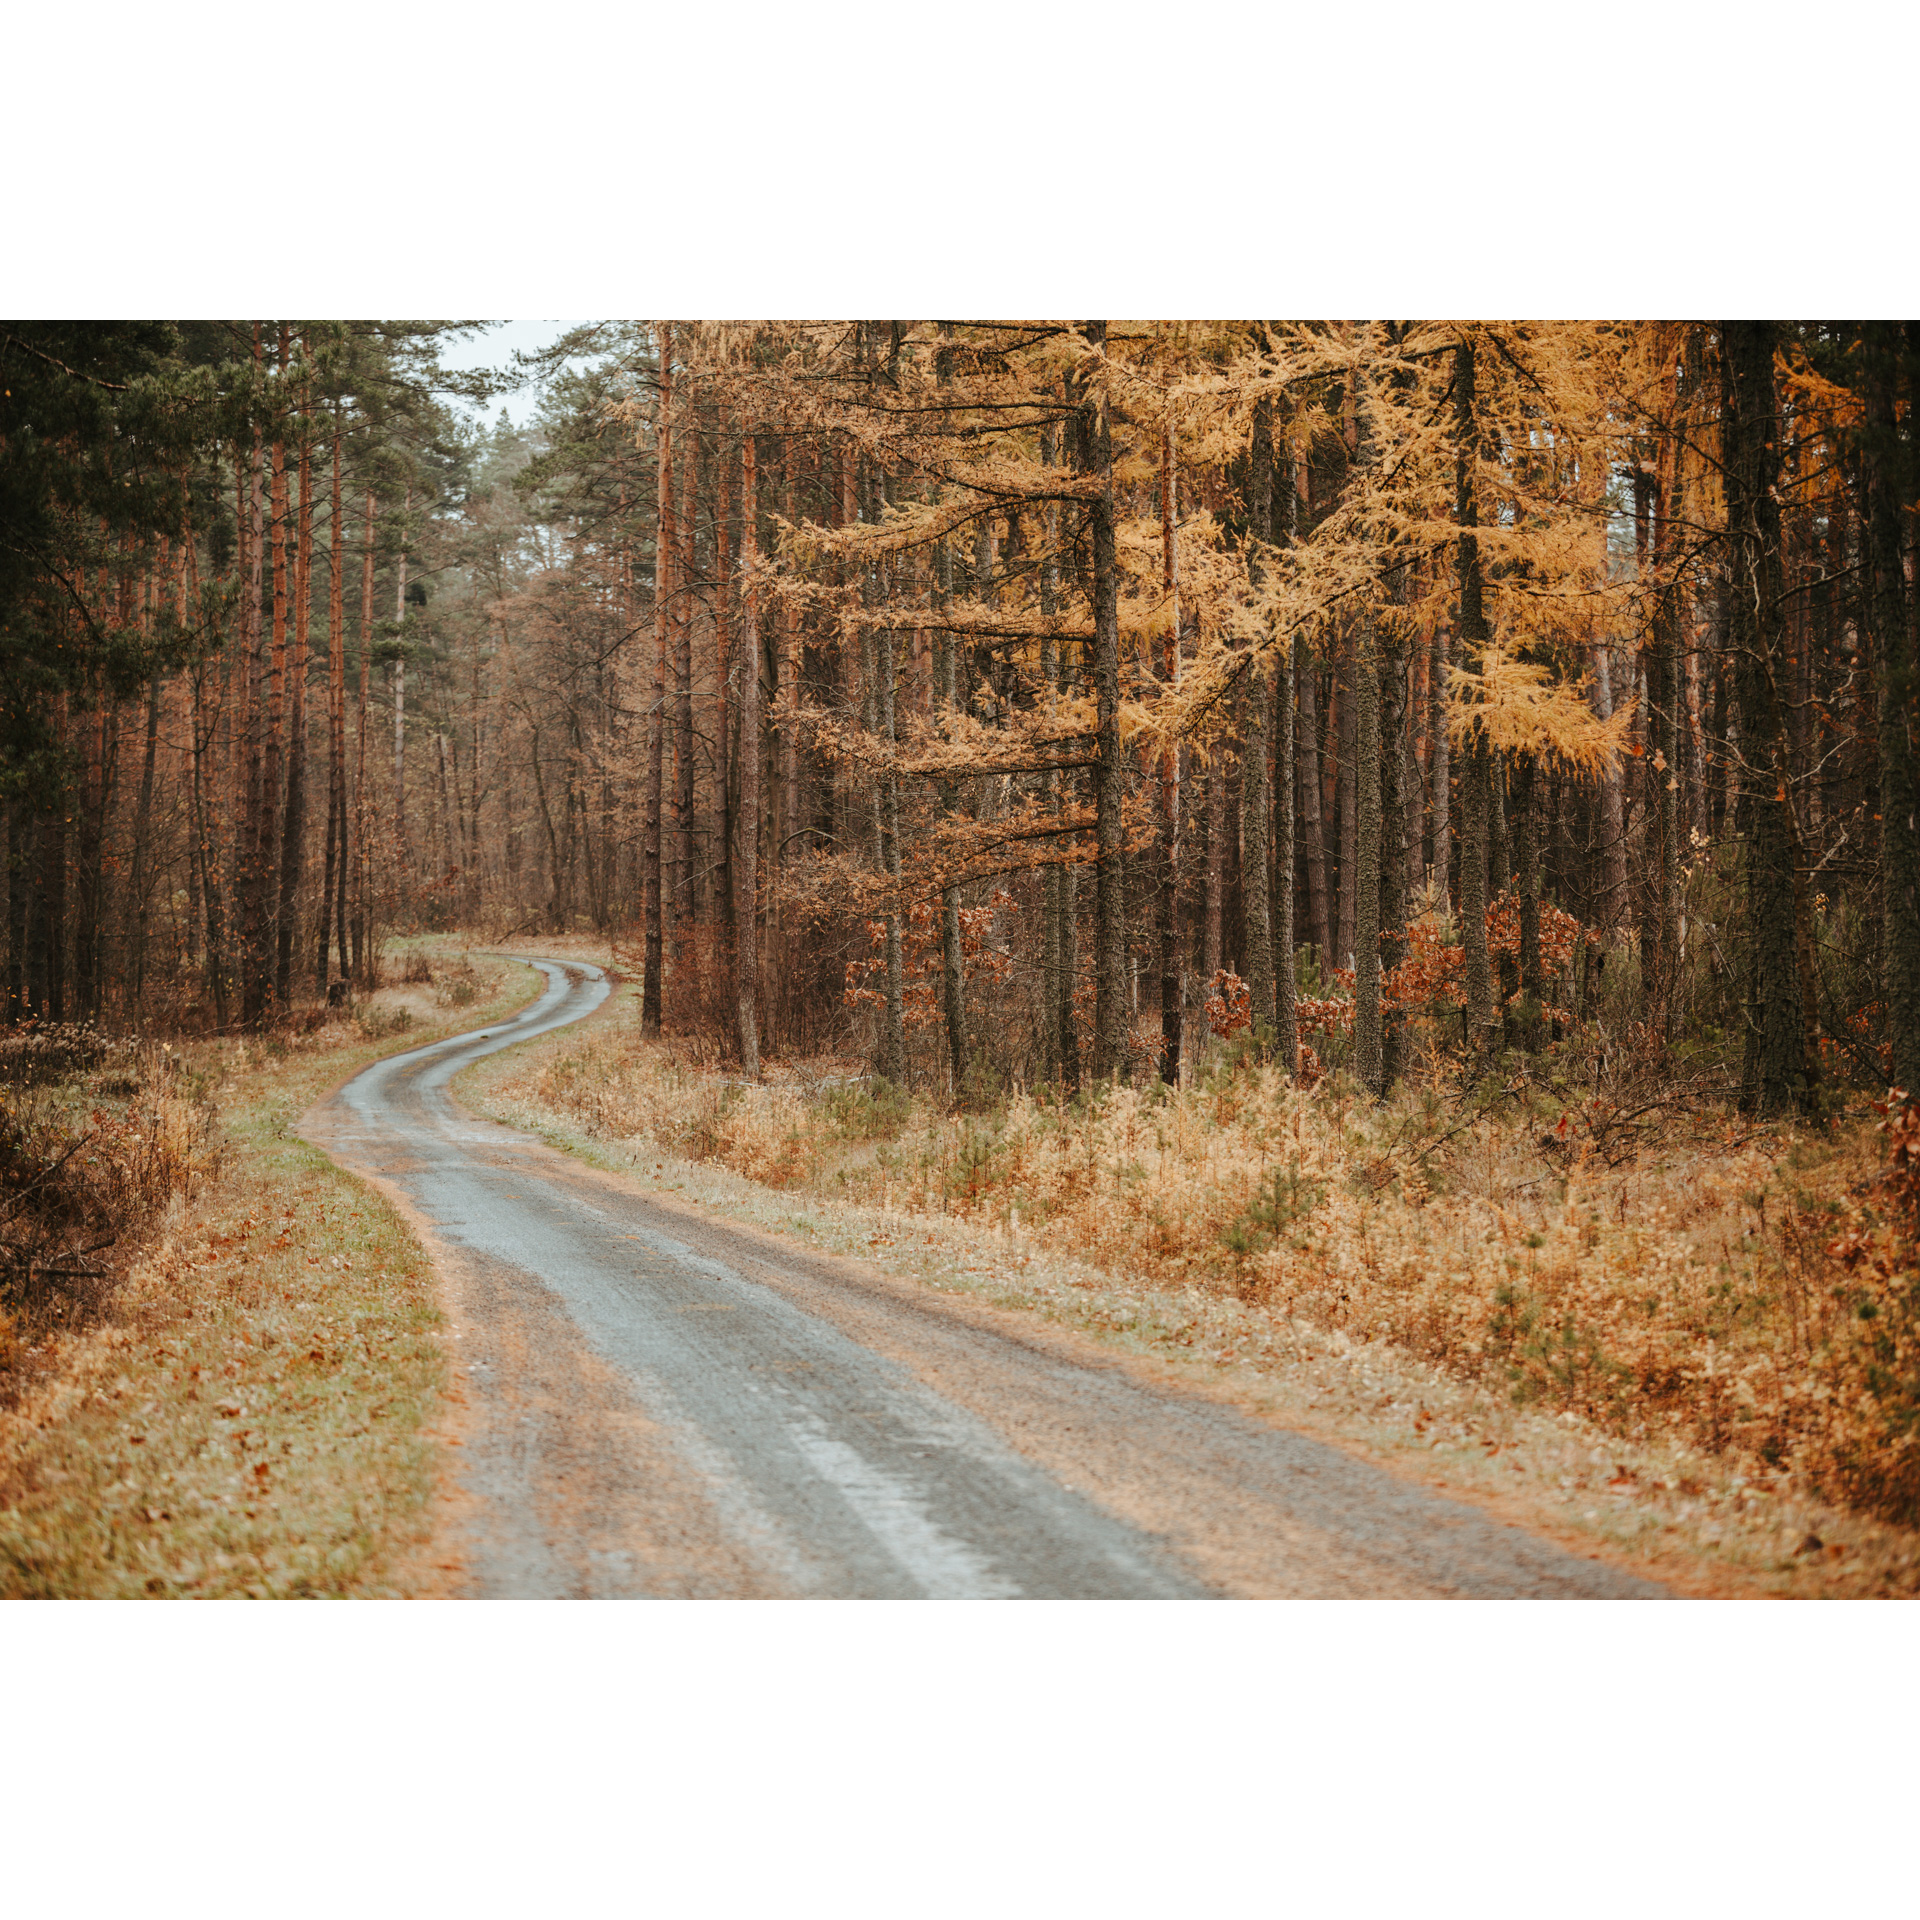 Piaszczysta droga prowadząca przez las między rudo-brązowymi poboczami i drzewami